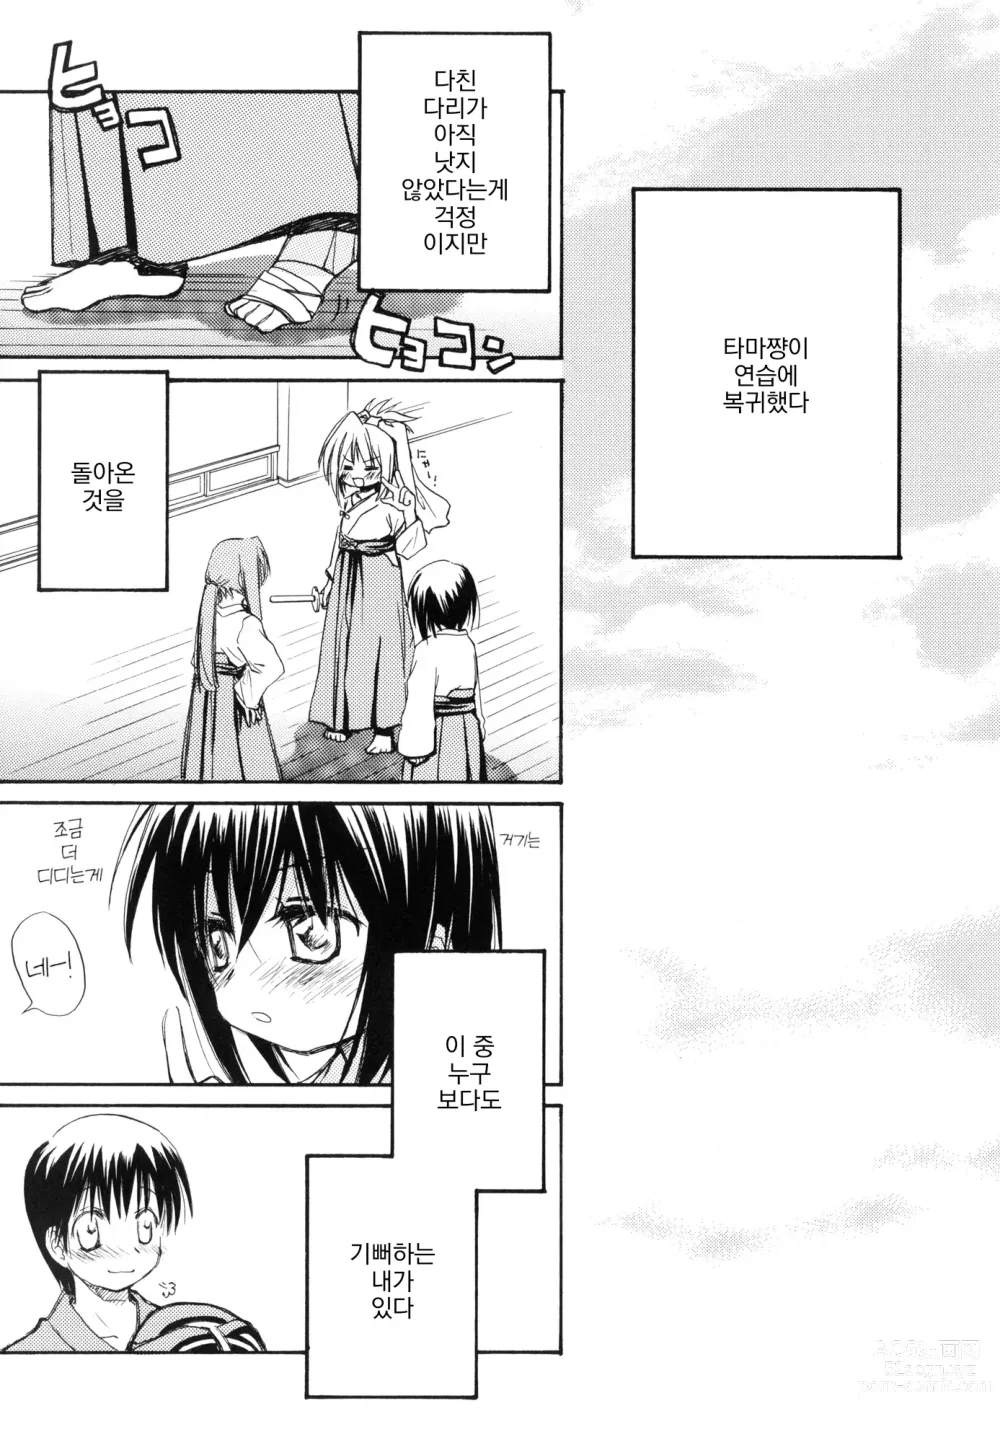 Page 2 of doujinshi 순간접착사랑